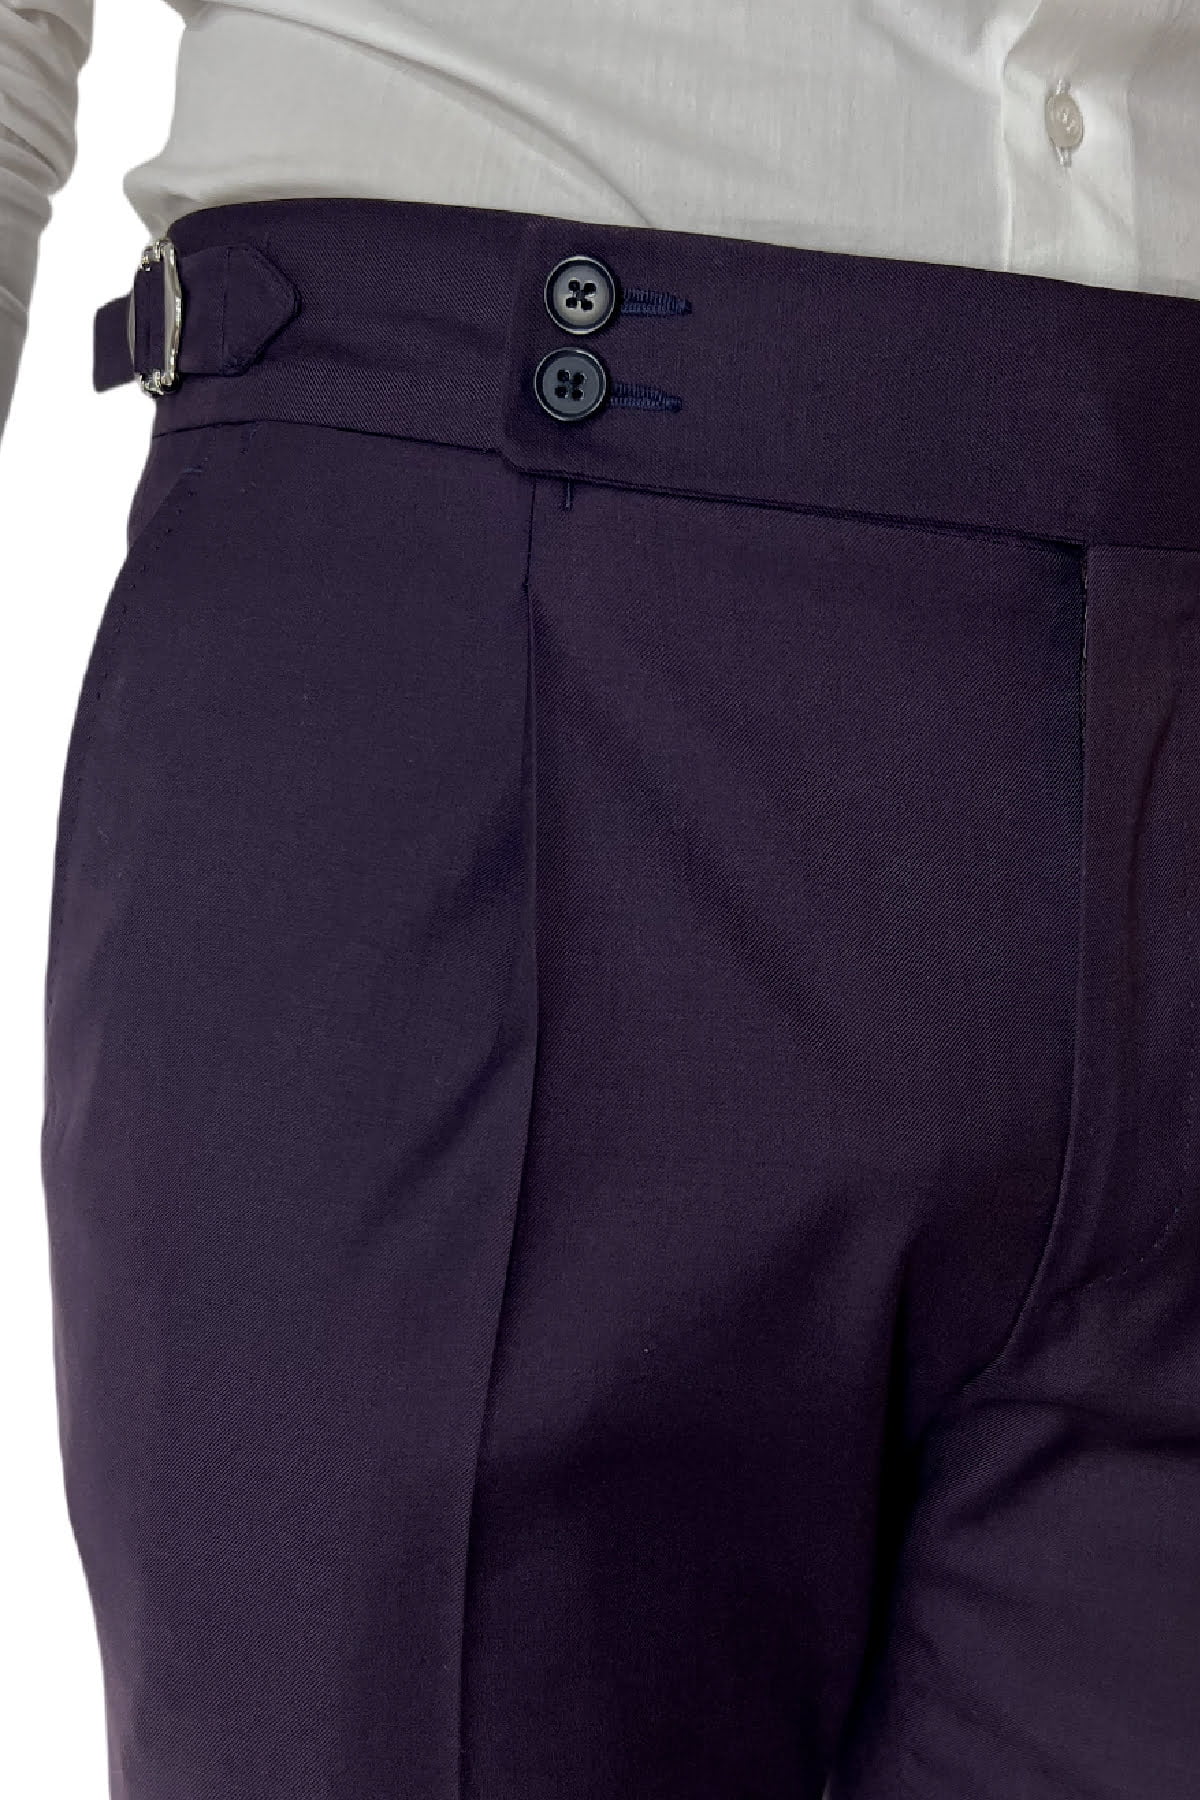 Pantalone uomo viola in fresco lana 120's Holland & Sherry vita alta con pinces fibbie laterali e risvolto 4cm